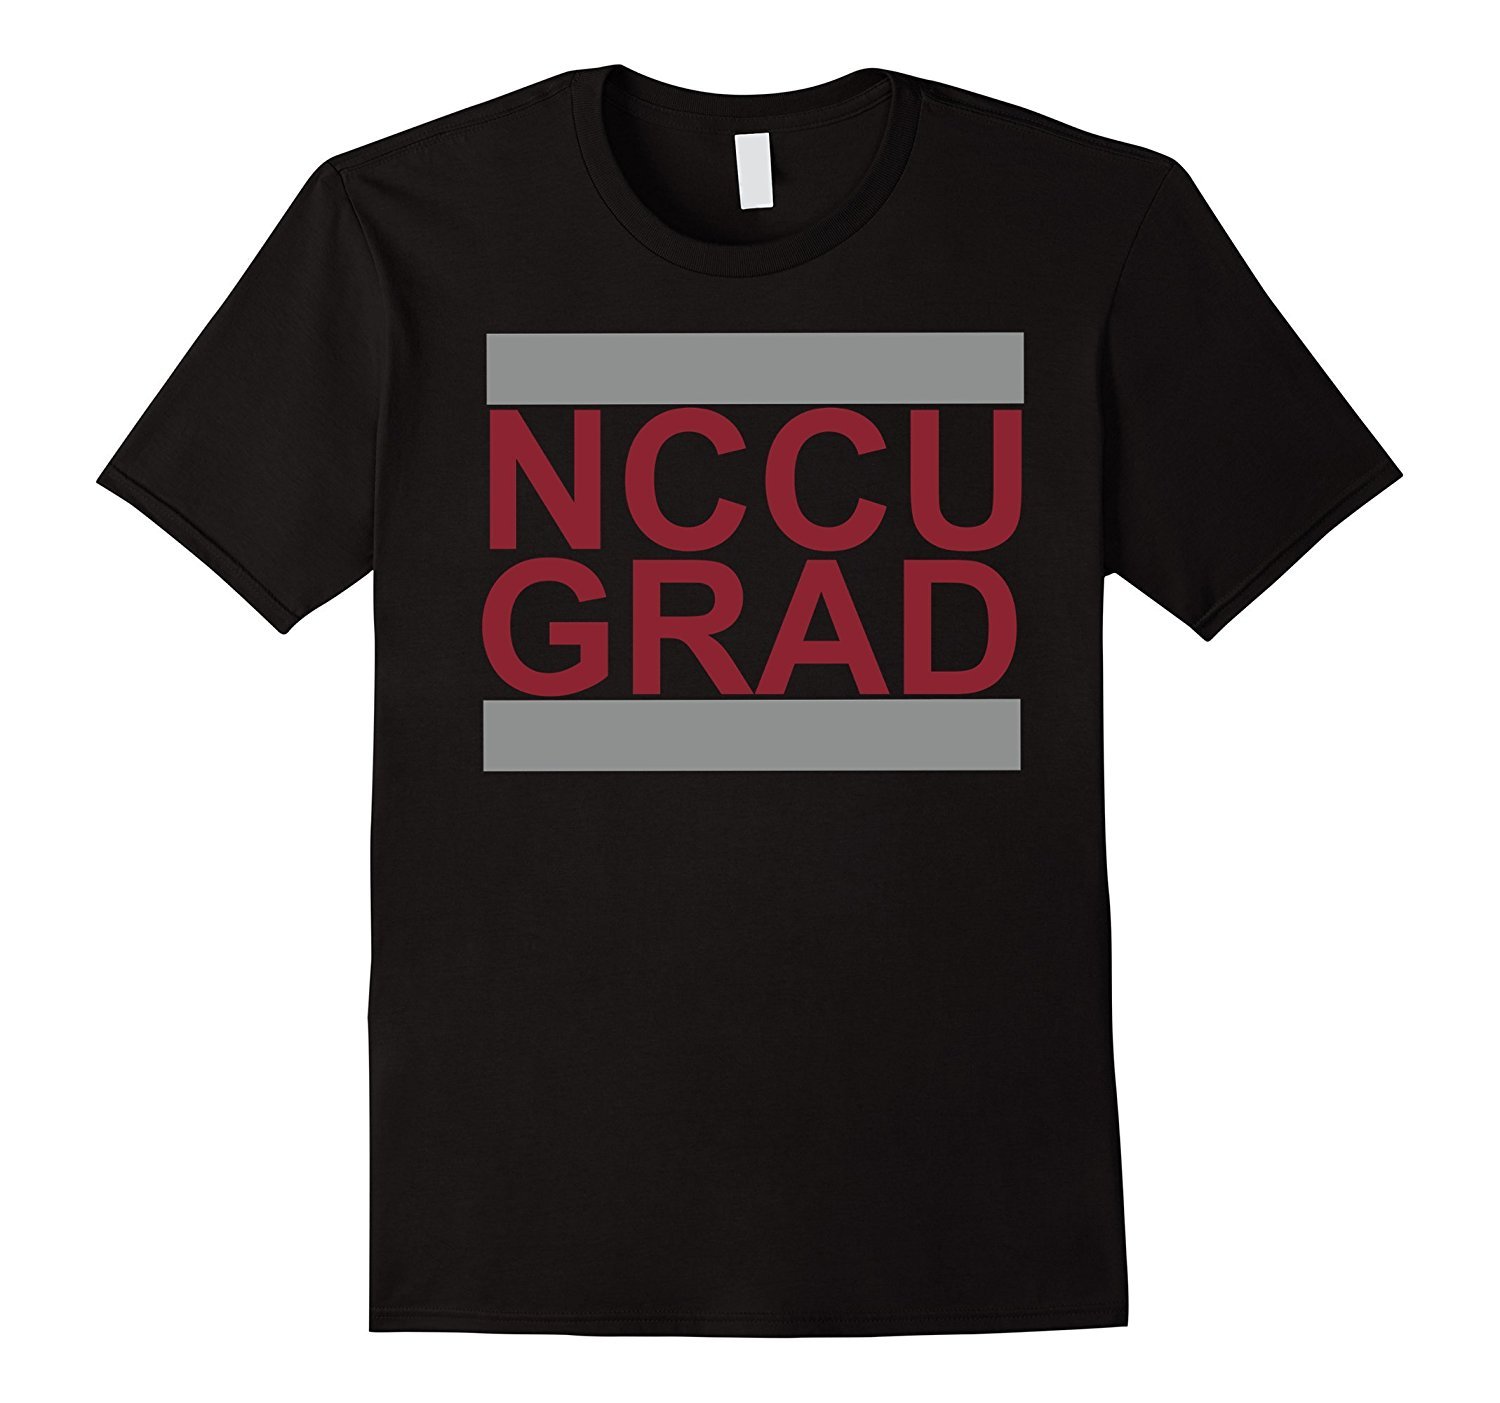 NCCU GRAD Alumni T-Shirt